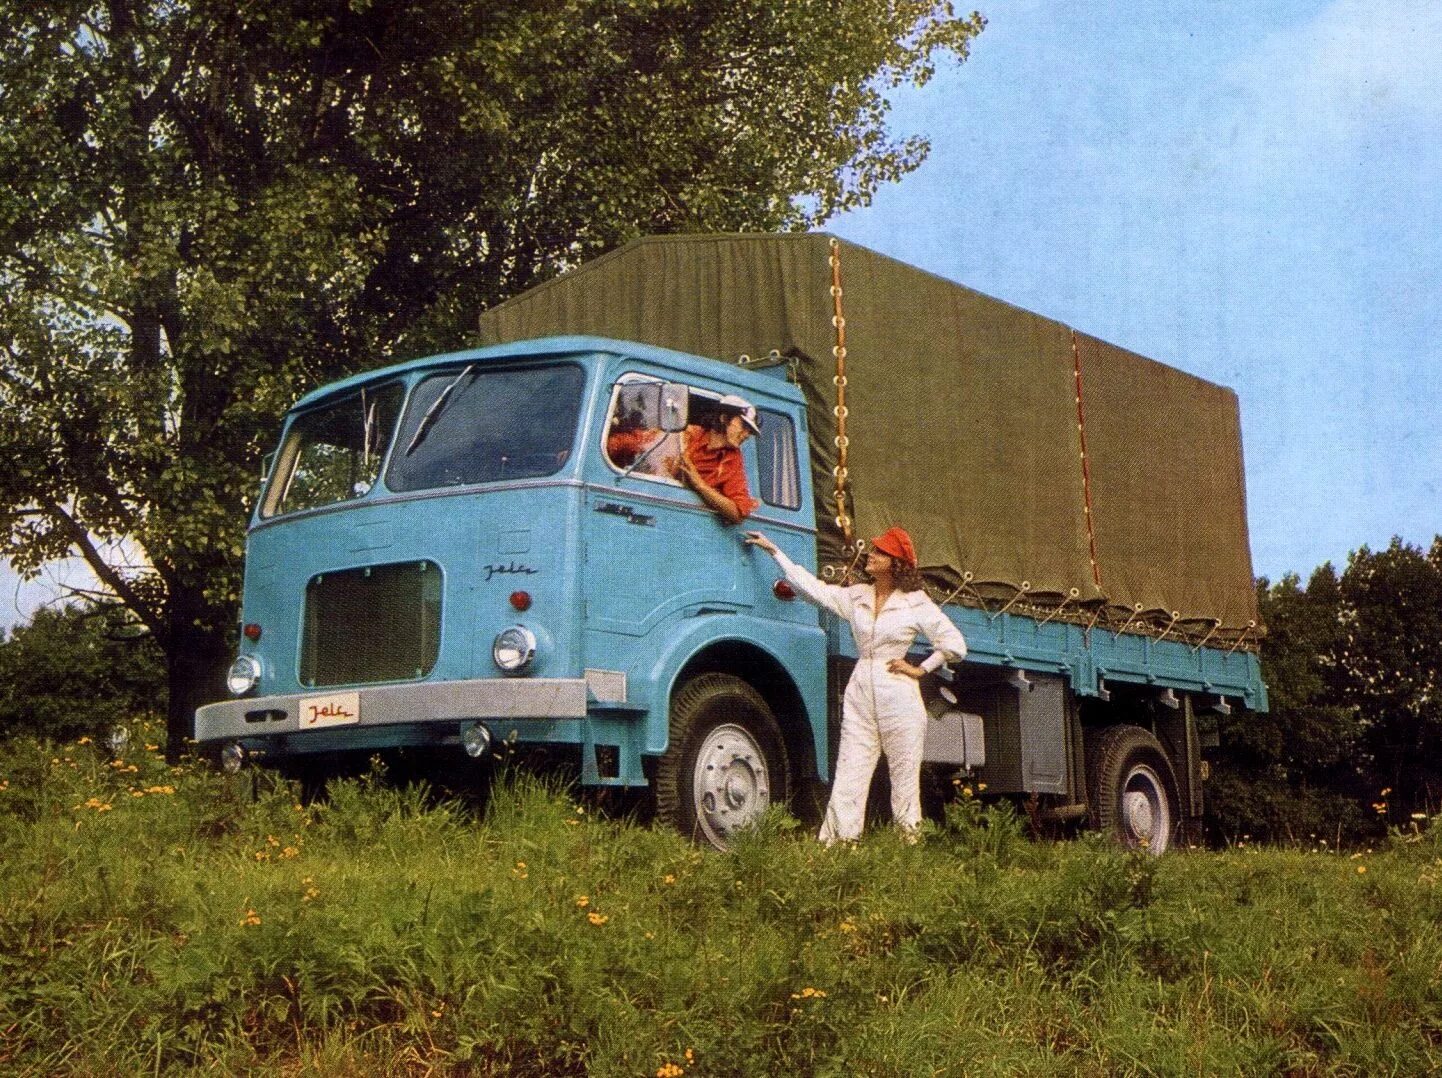 Польский грузовик. Польский грузовик Jelcz. Грузовики Jelcz Польша. Zubr a80 грузовик. Польский грузовой автомобиль Jelcz 574 z.